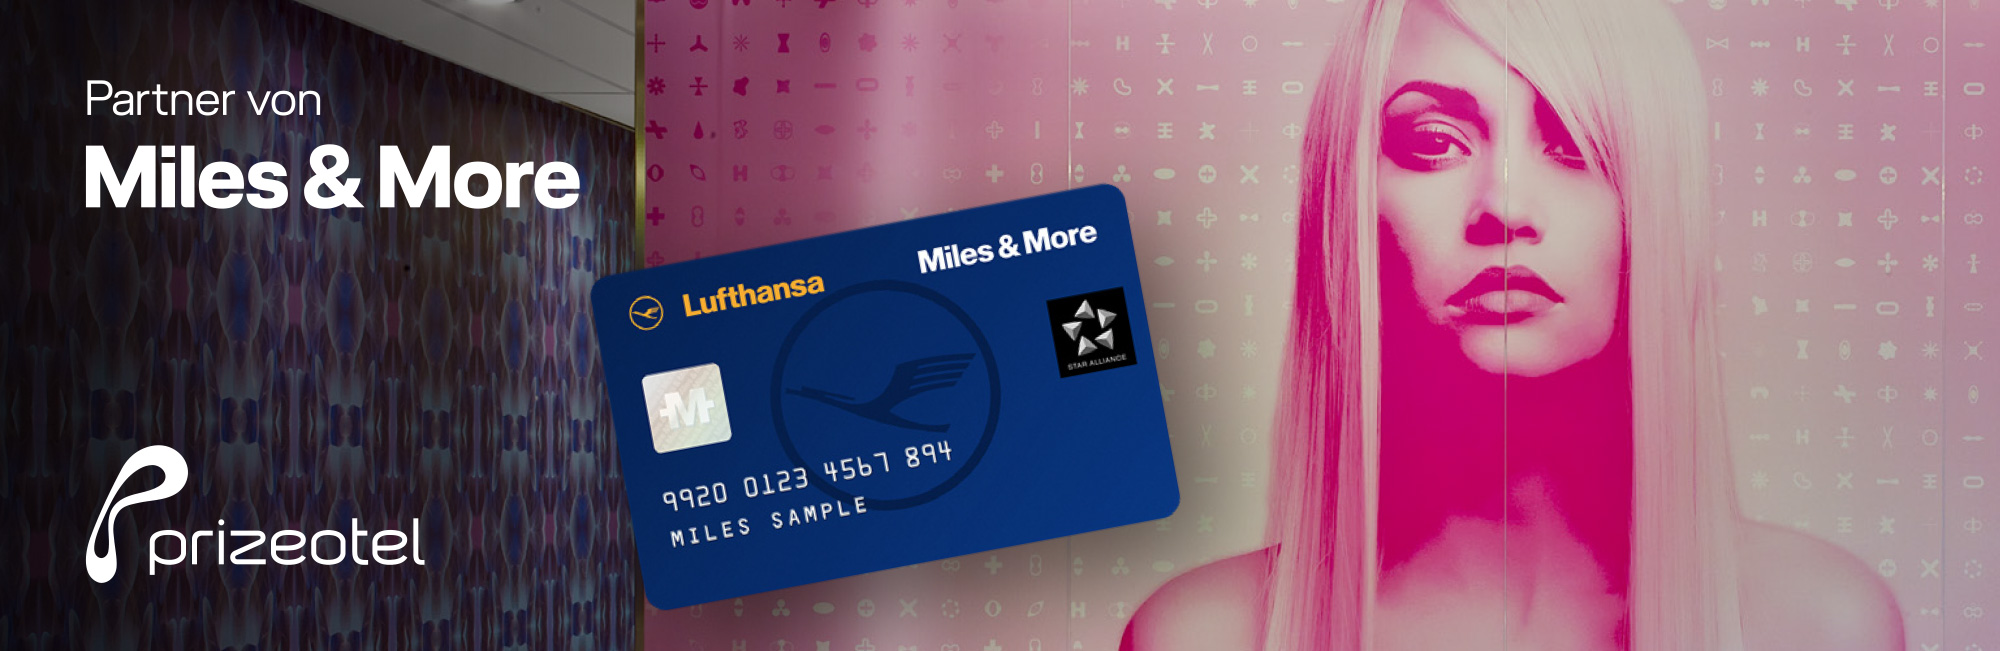 Werbeplakat von prizeotel und Miles&More Partnerschaft mit Lufthansa